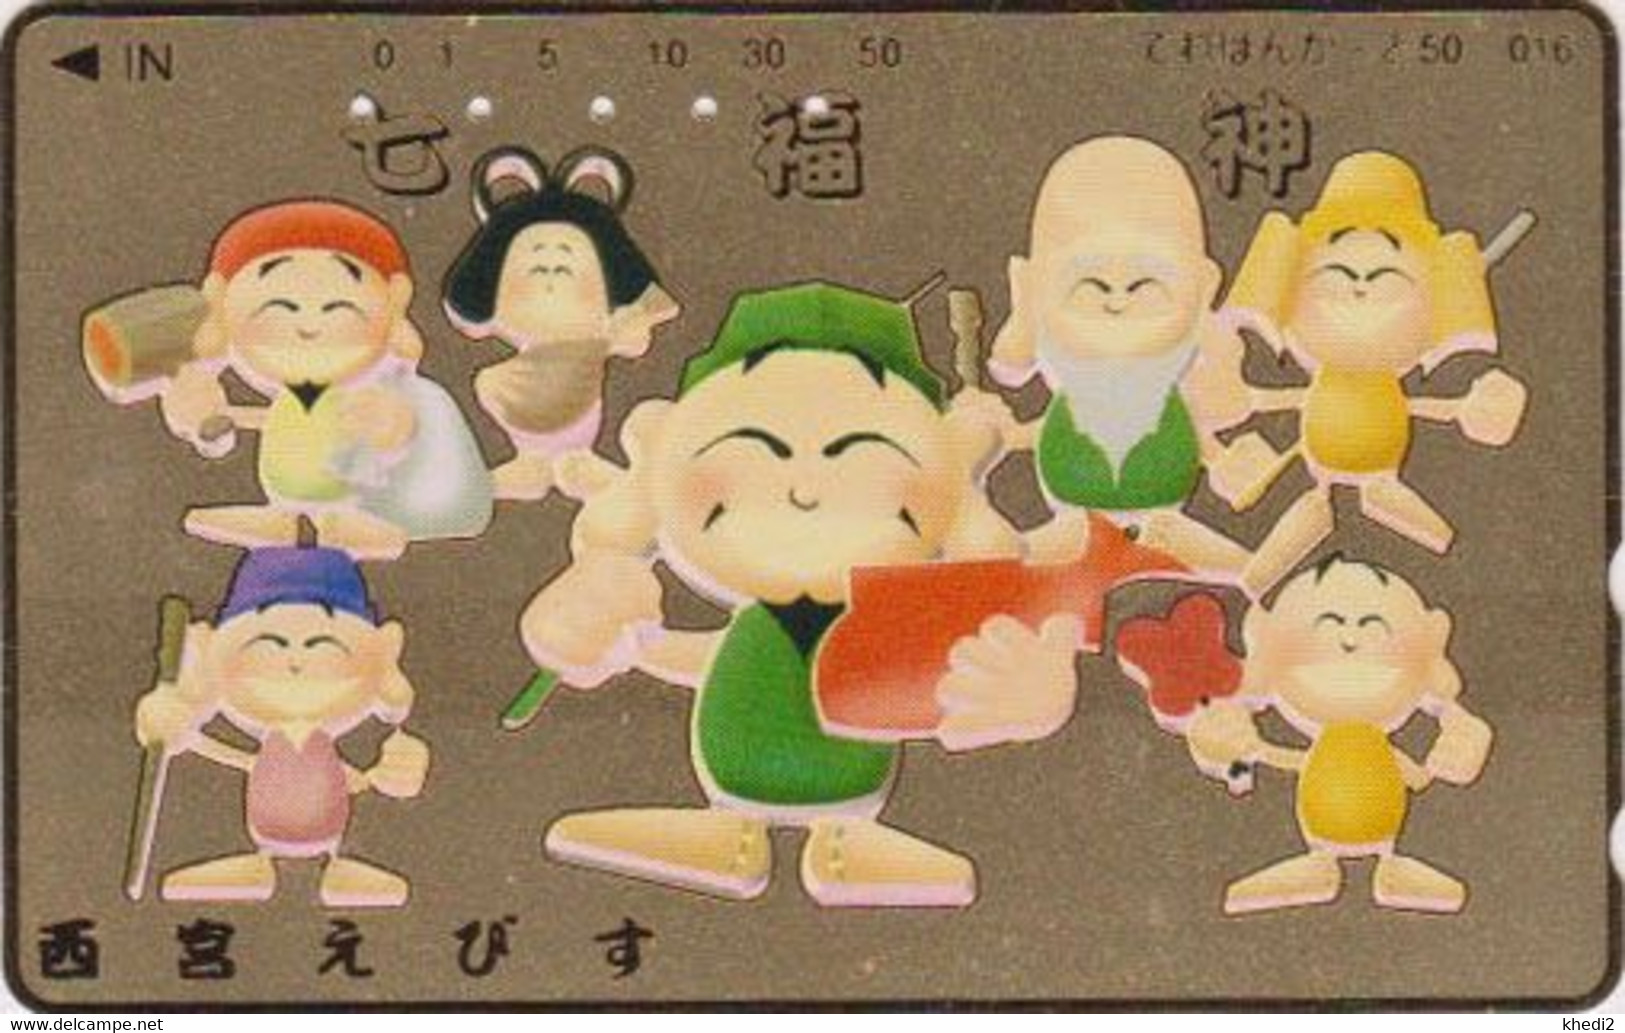 TC DOREE JAPON / 110-011 - Culture RELIGION - 7 DIEUX DU BONHEUR - LUCK GODS JAPAN GOLD Phonecard - 324 - Cultura